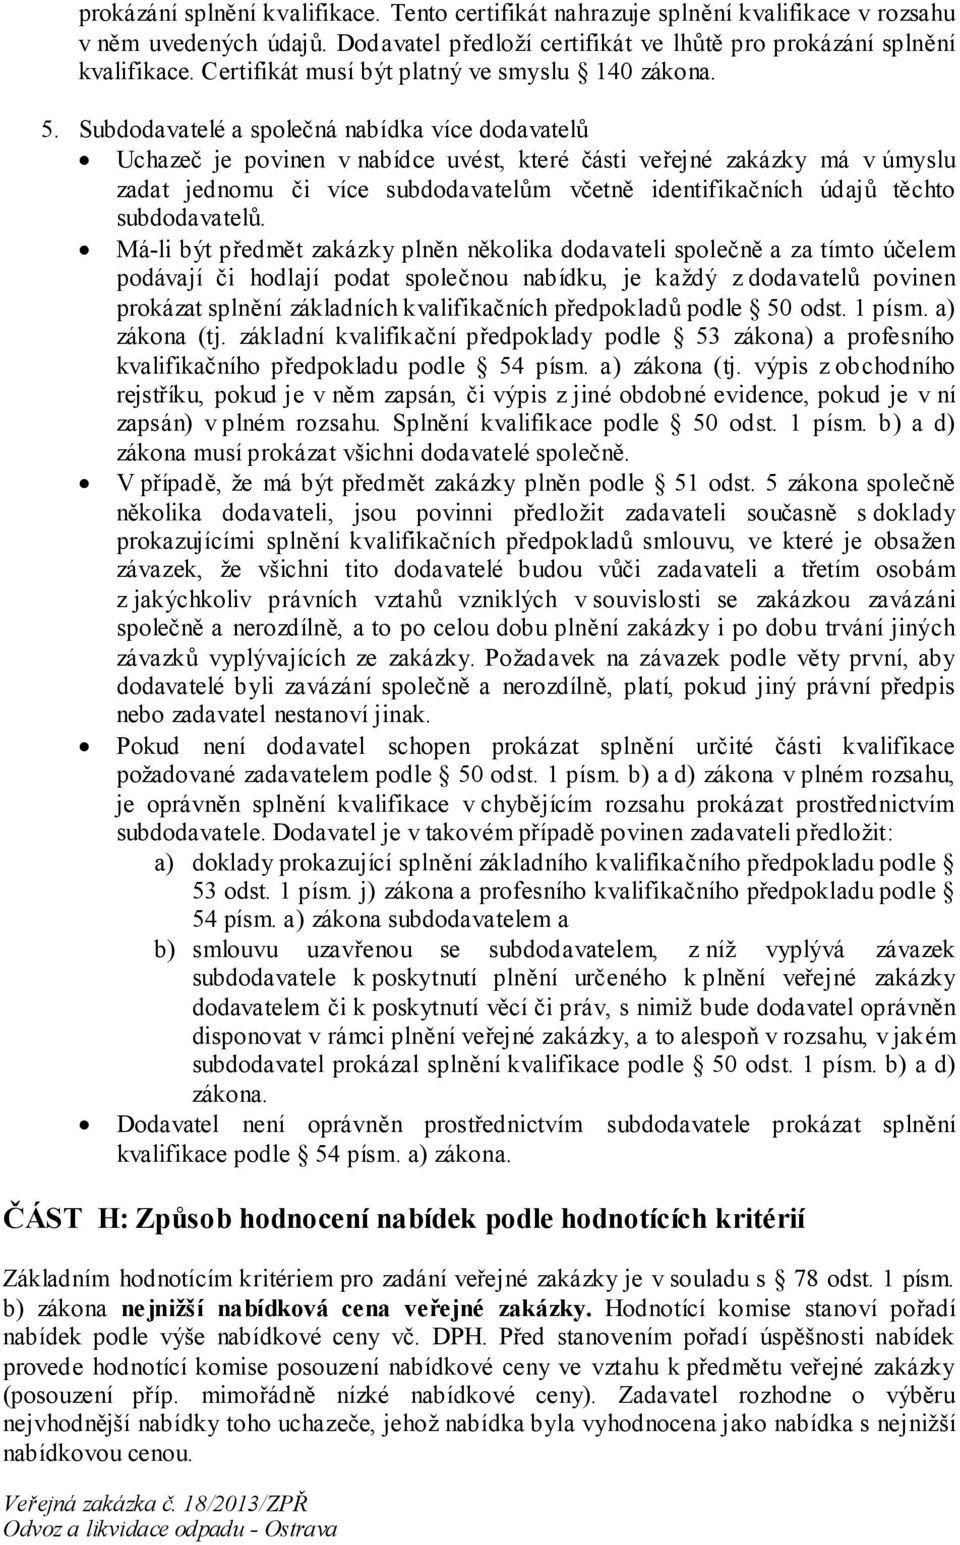 Subdodavatelé a společná nabídka více dodavatelů Uchazeč je povinen v nabídce uvést, které části veřejné zakázky má v úmyslu zadat jednomu či více subdodavatelům včetně identifikačních údajů těchto